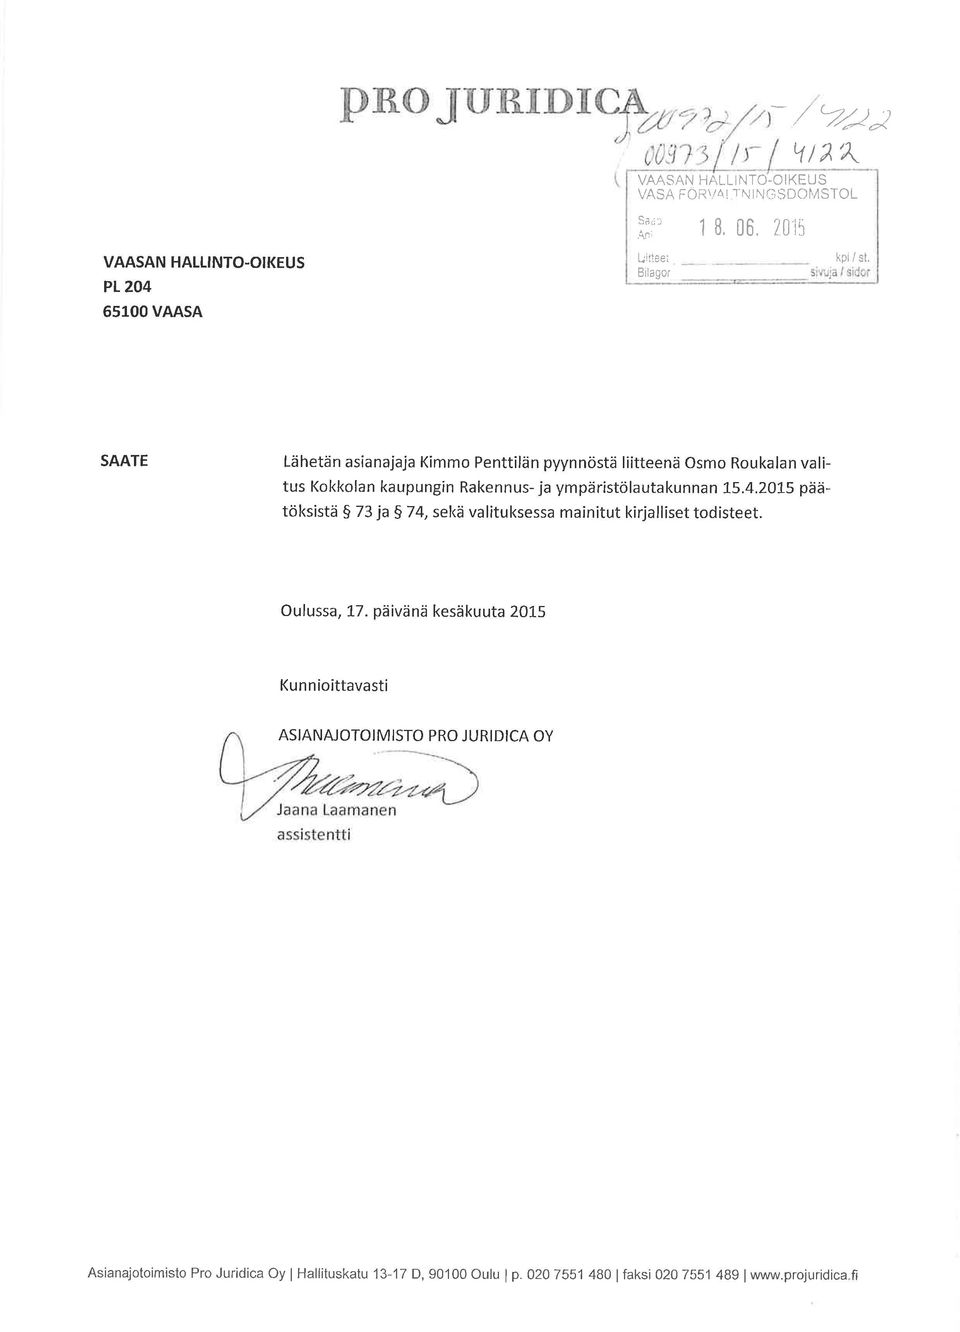 SAATE Lähetän asianajaja Kimmo Penttilän pyynnöstä liitteenä Osmo Roukalan valitus Kokkolan kaupungin Rakennus- ja ympäristölautakunnan 1,5.4.